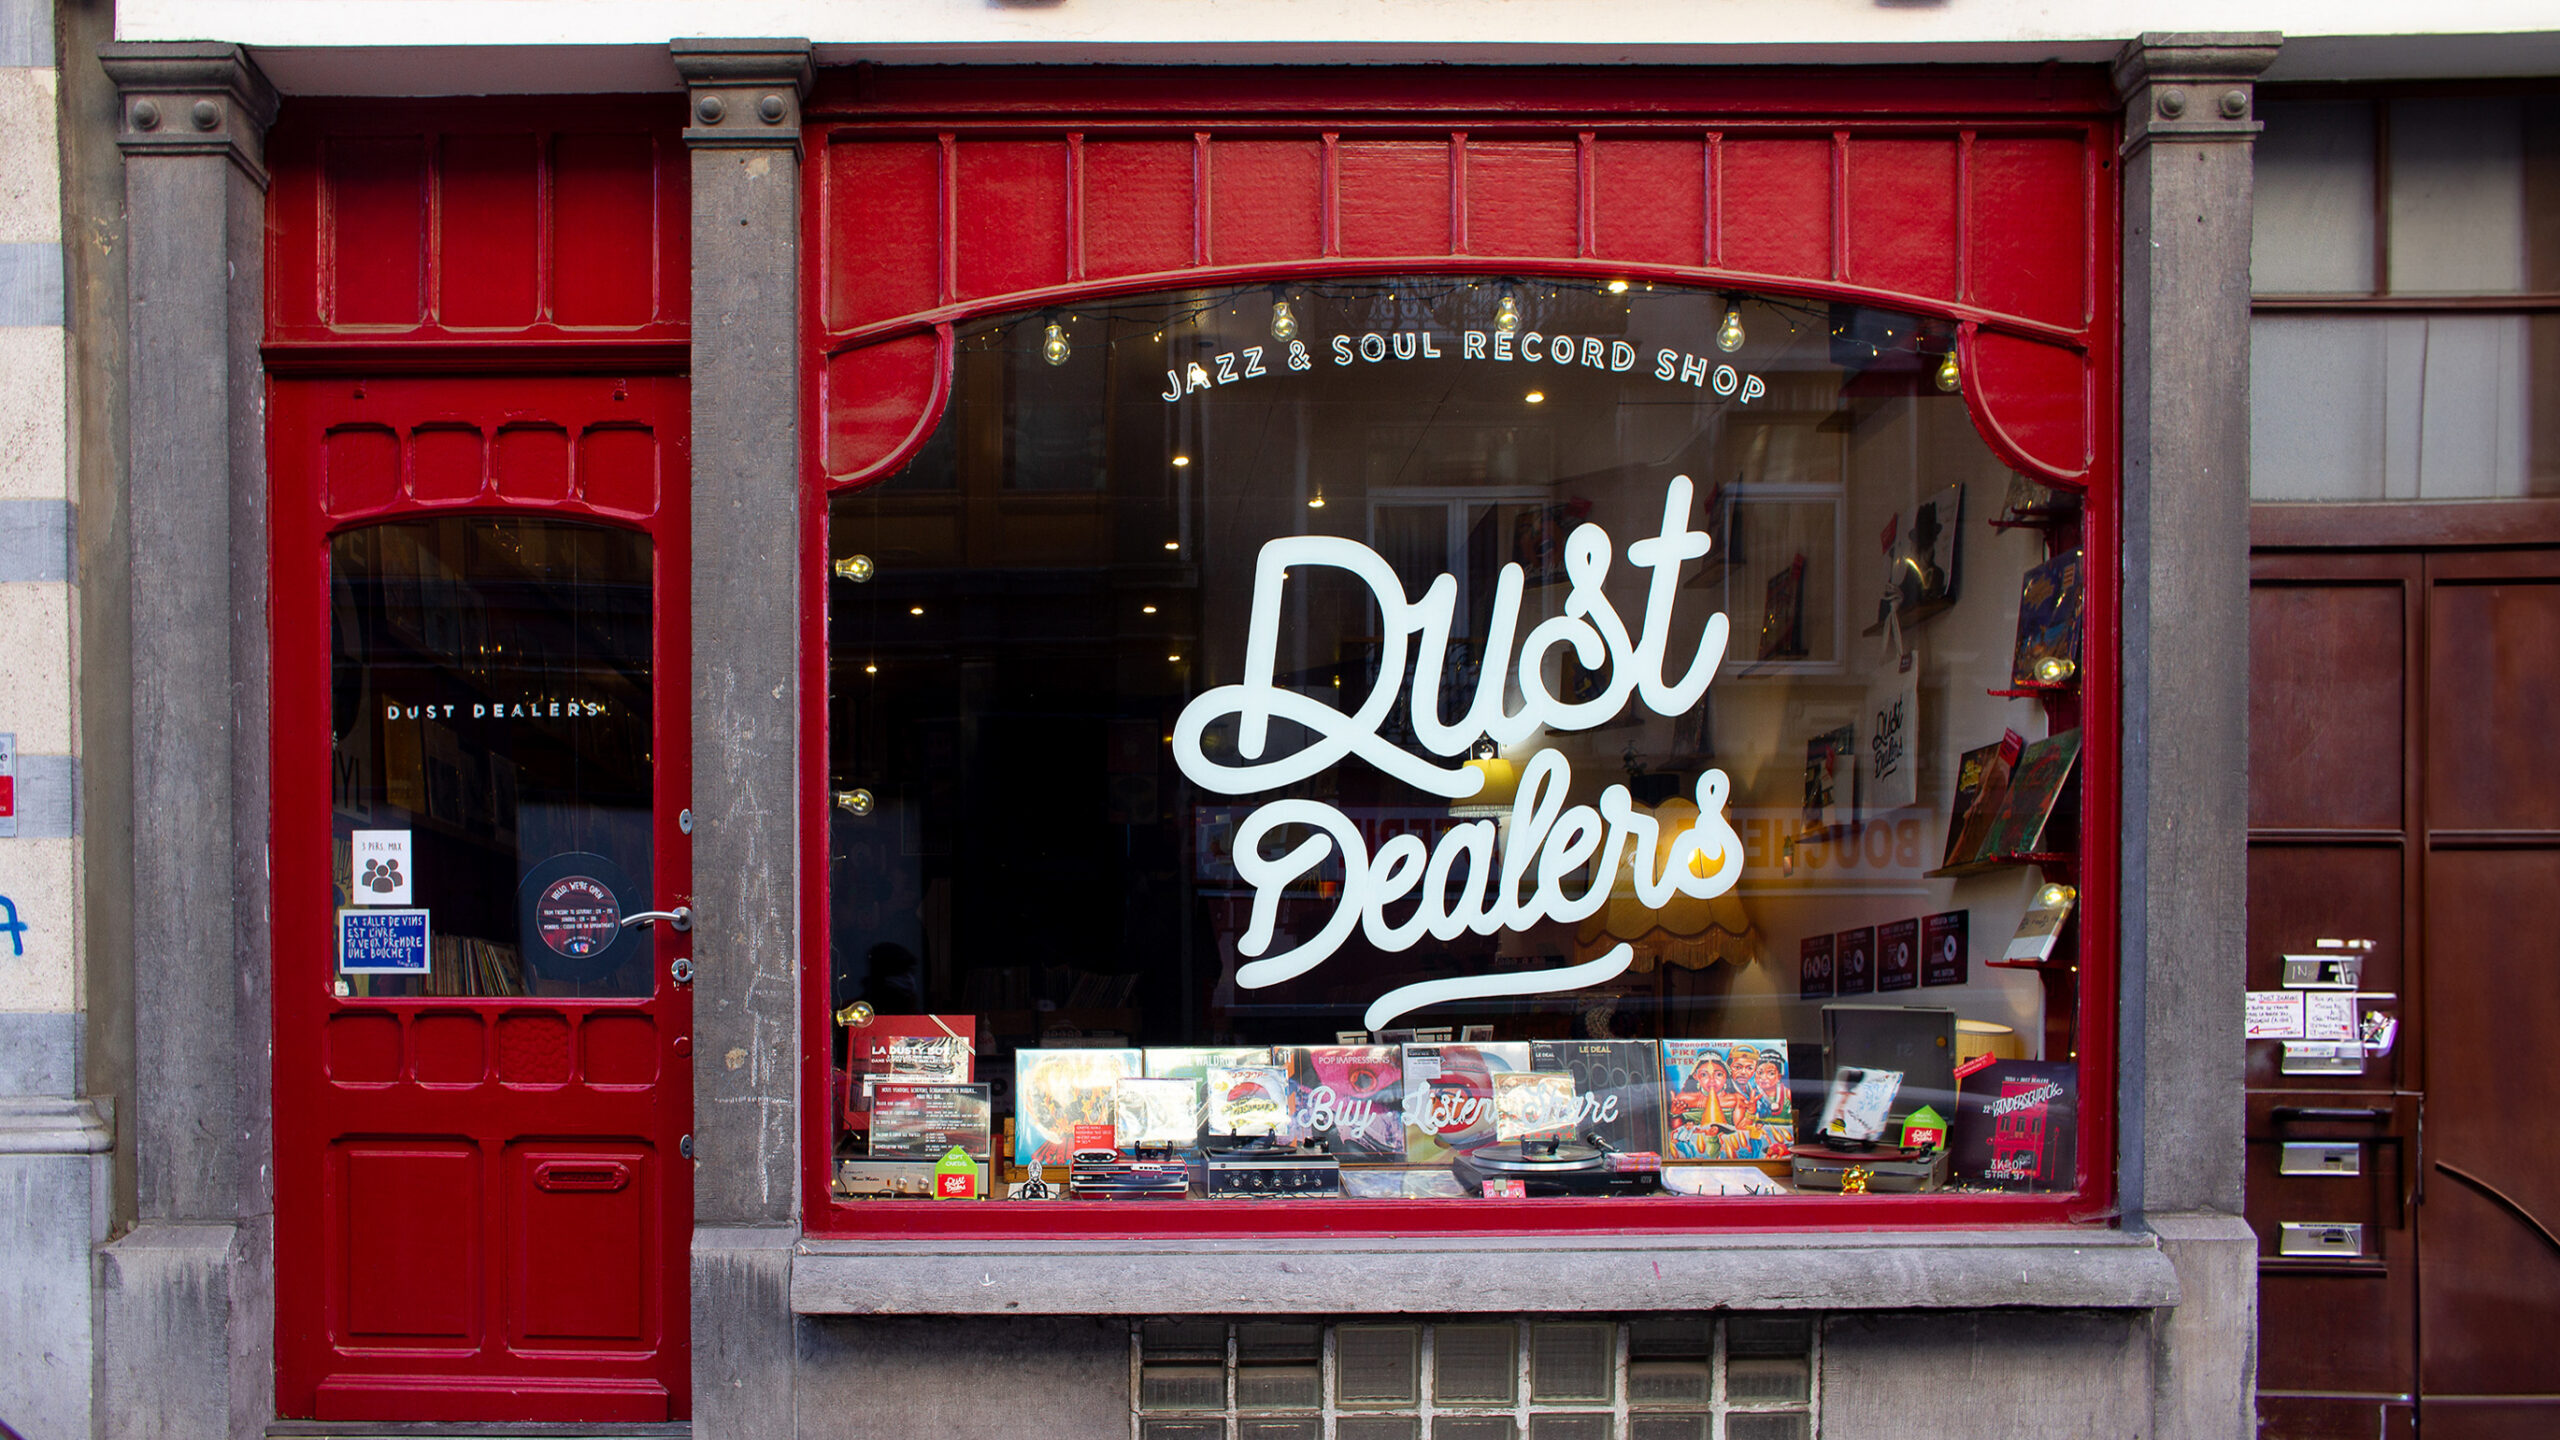 Dust Dealers Jazz en Soul record shop